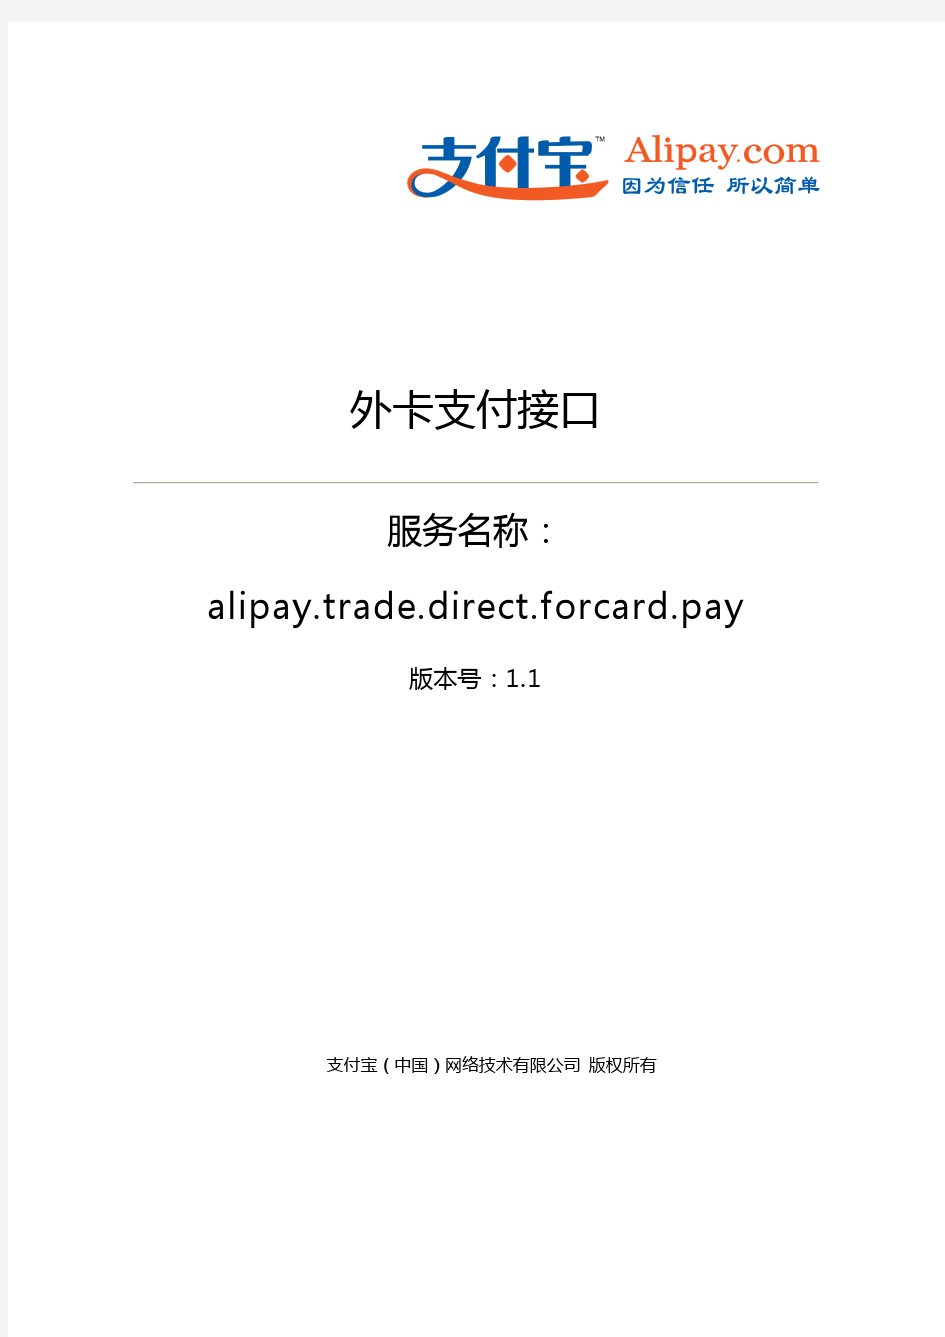 外卡支付接口(alipay.trade.direct.forcard.pay)